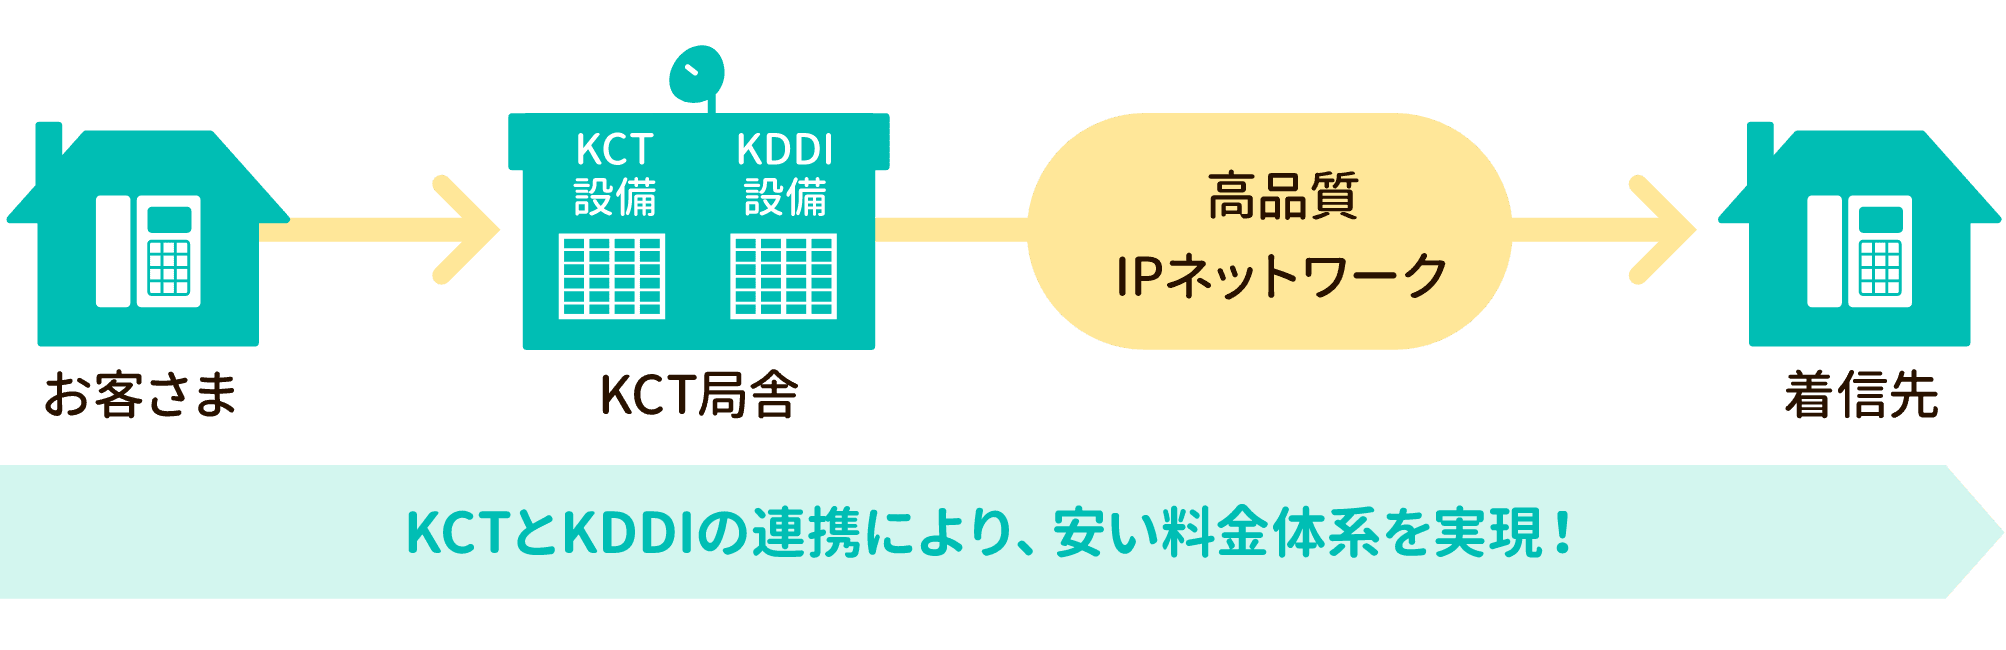 KCTとKDDIの連携により、安い料金体系を実現！